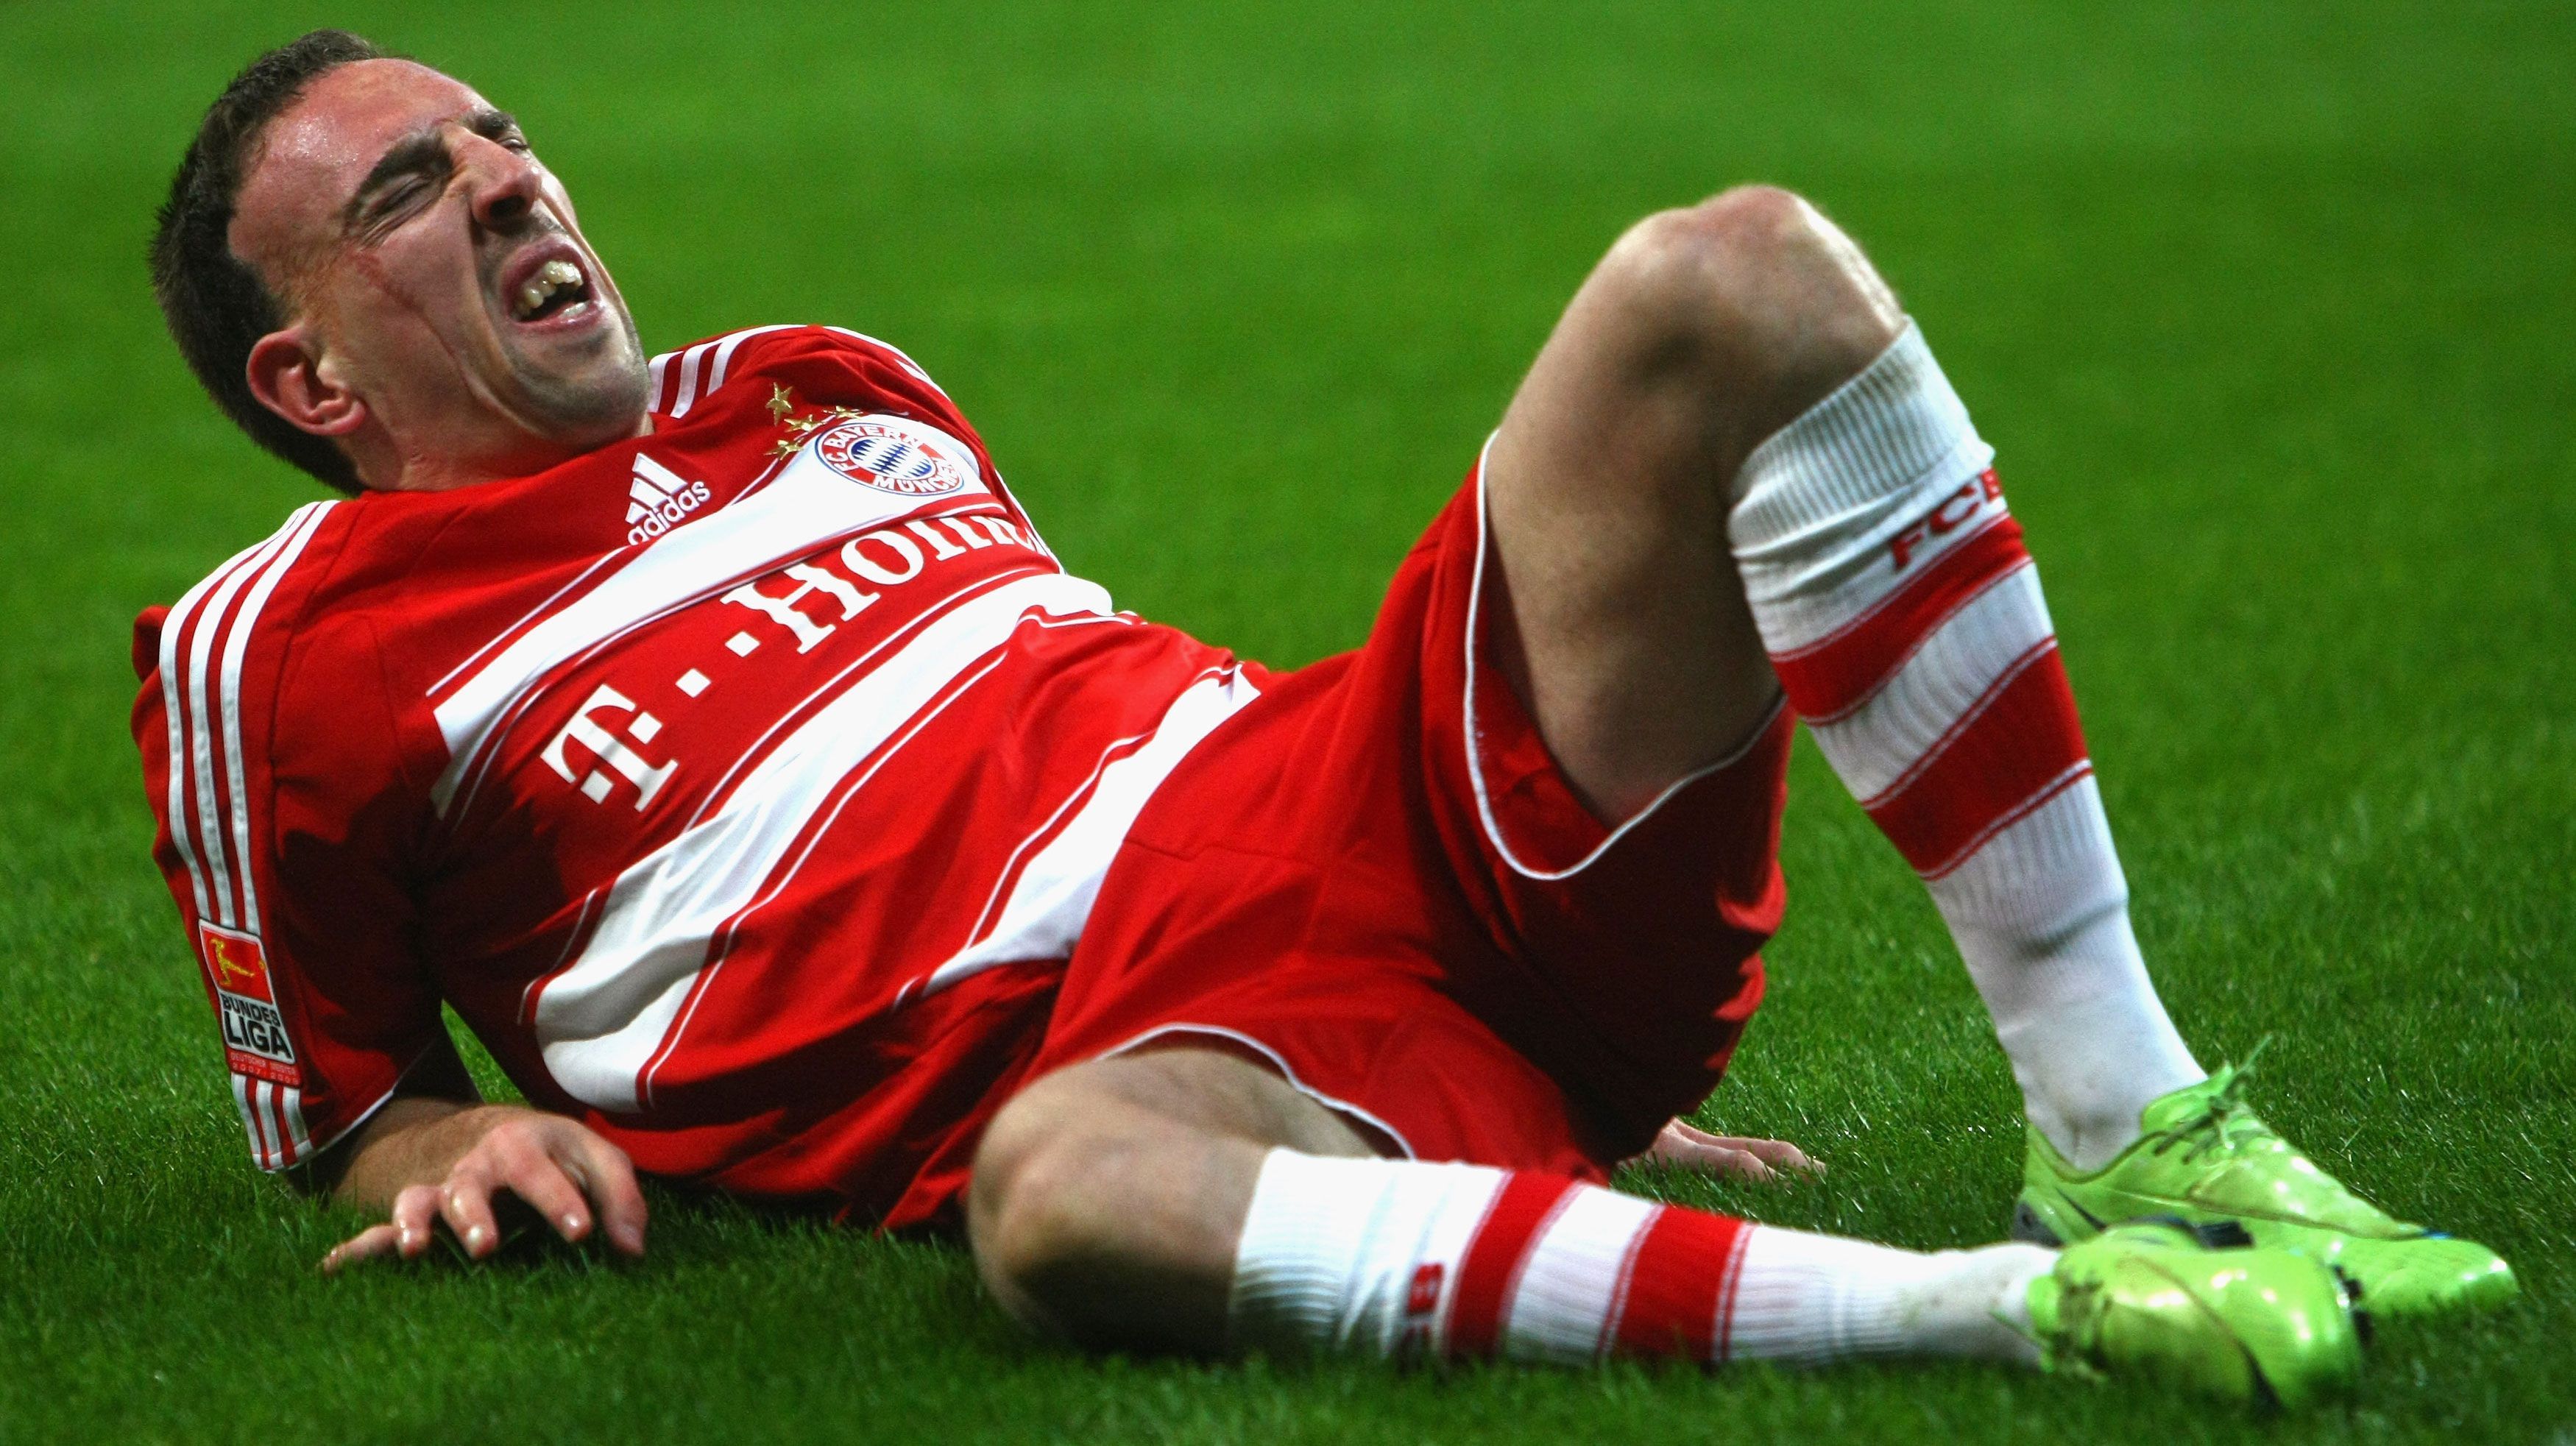 
                <strong>Rückenprobleme</strong><br>
                Rückenprobleme: Die Saison 2013/14 ist für Franck Ribery wegen Rückenproblemen eine Leidenszeit. Gleich drei Mal muss er deswegen passen - vom 23. bis 30. Januar 2014, 2. bis 30. März 2014 sowie 6. Juni bis 15. Juli 2014. Verpasste Spiele dadurch: 15.
              